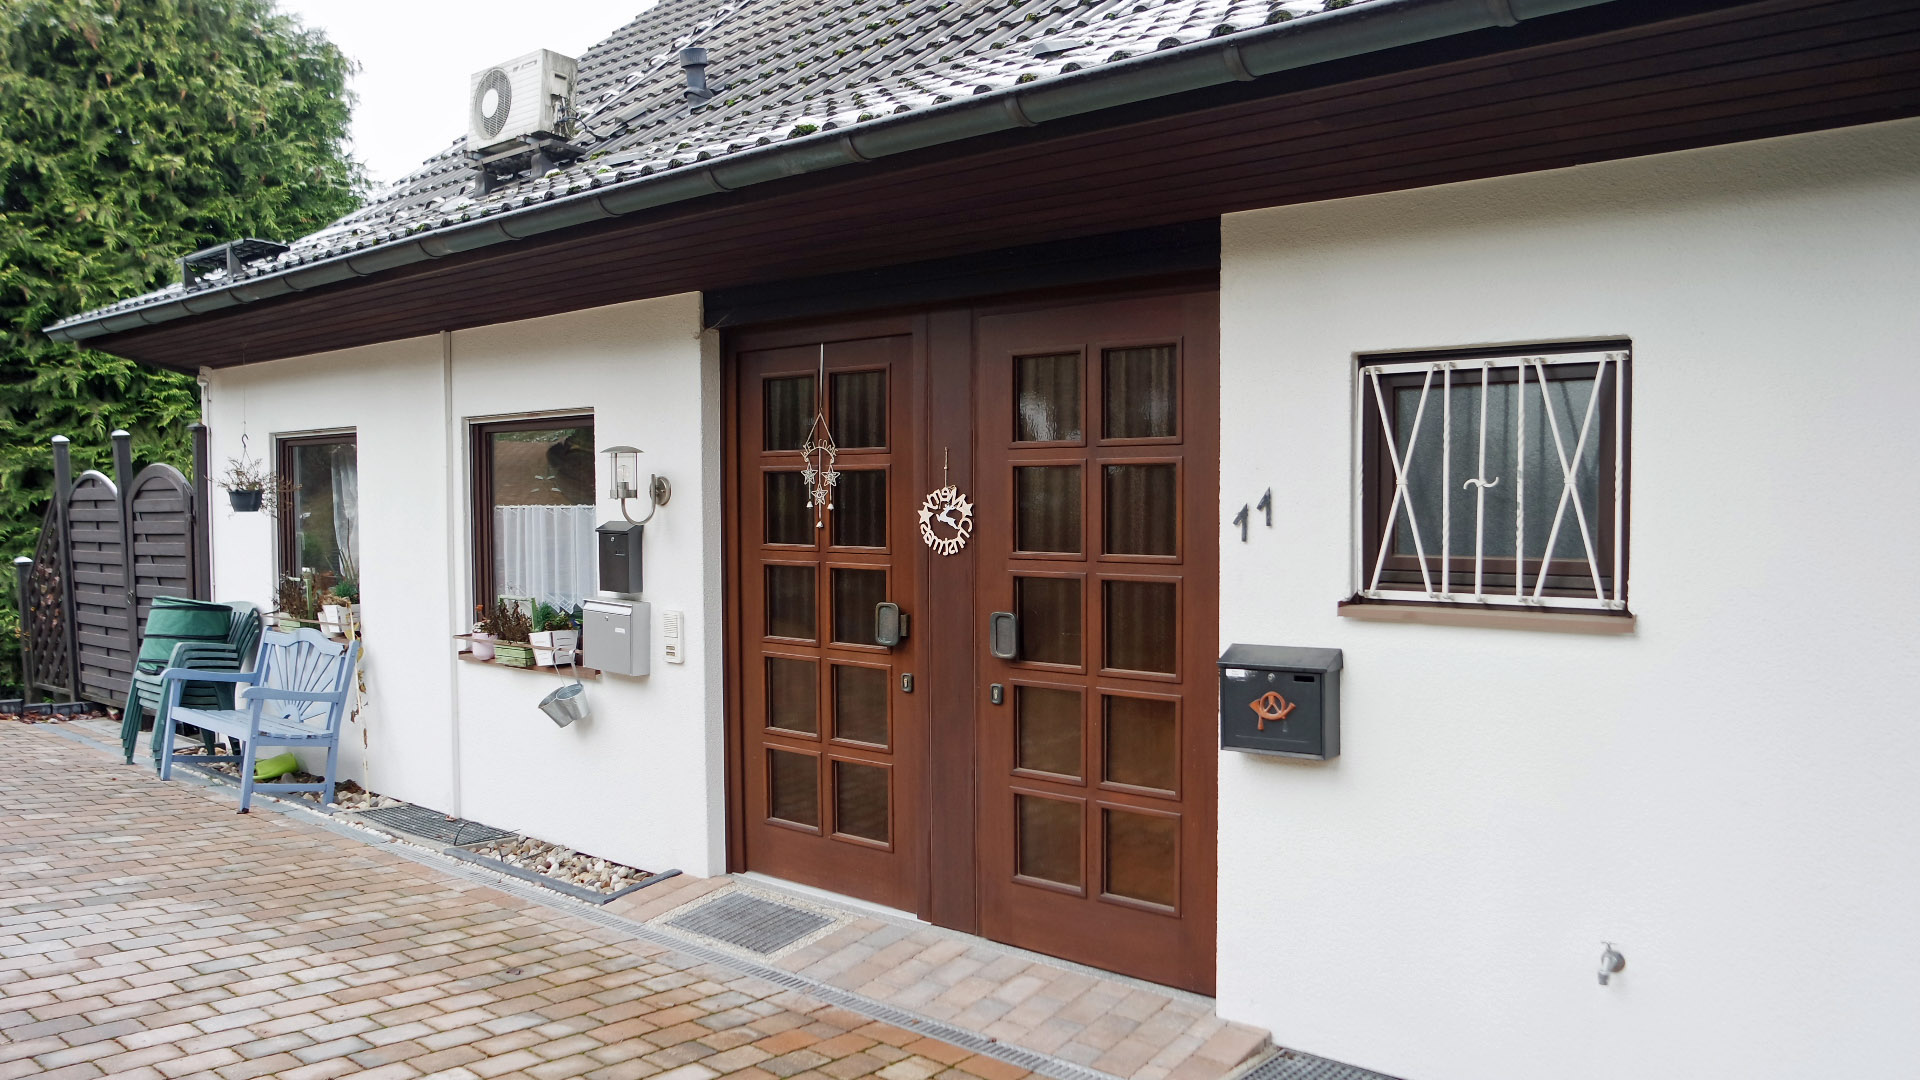 Gummersbach-Bernberg: Wohnhaus mit 2-3 Wohnungen, Vorderseite mit separaten Eingängen zum Erdgeschoss und Dachgeschoss